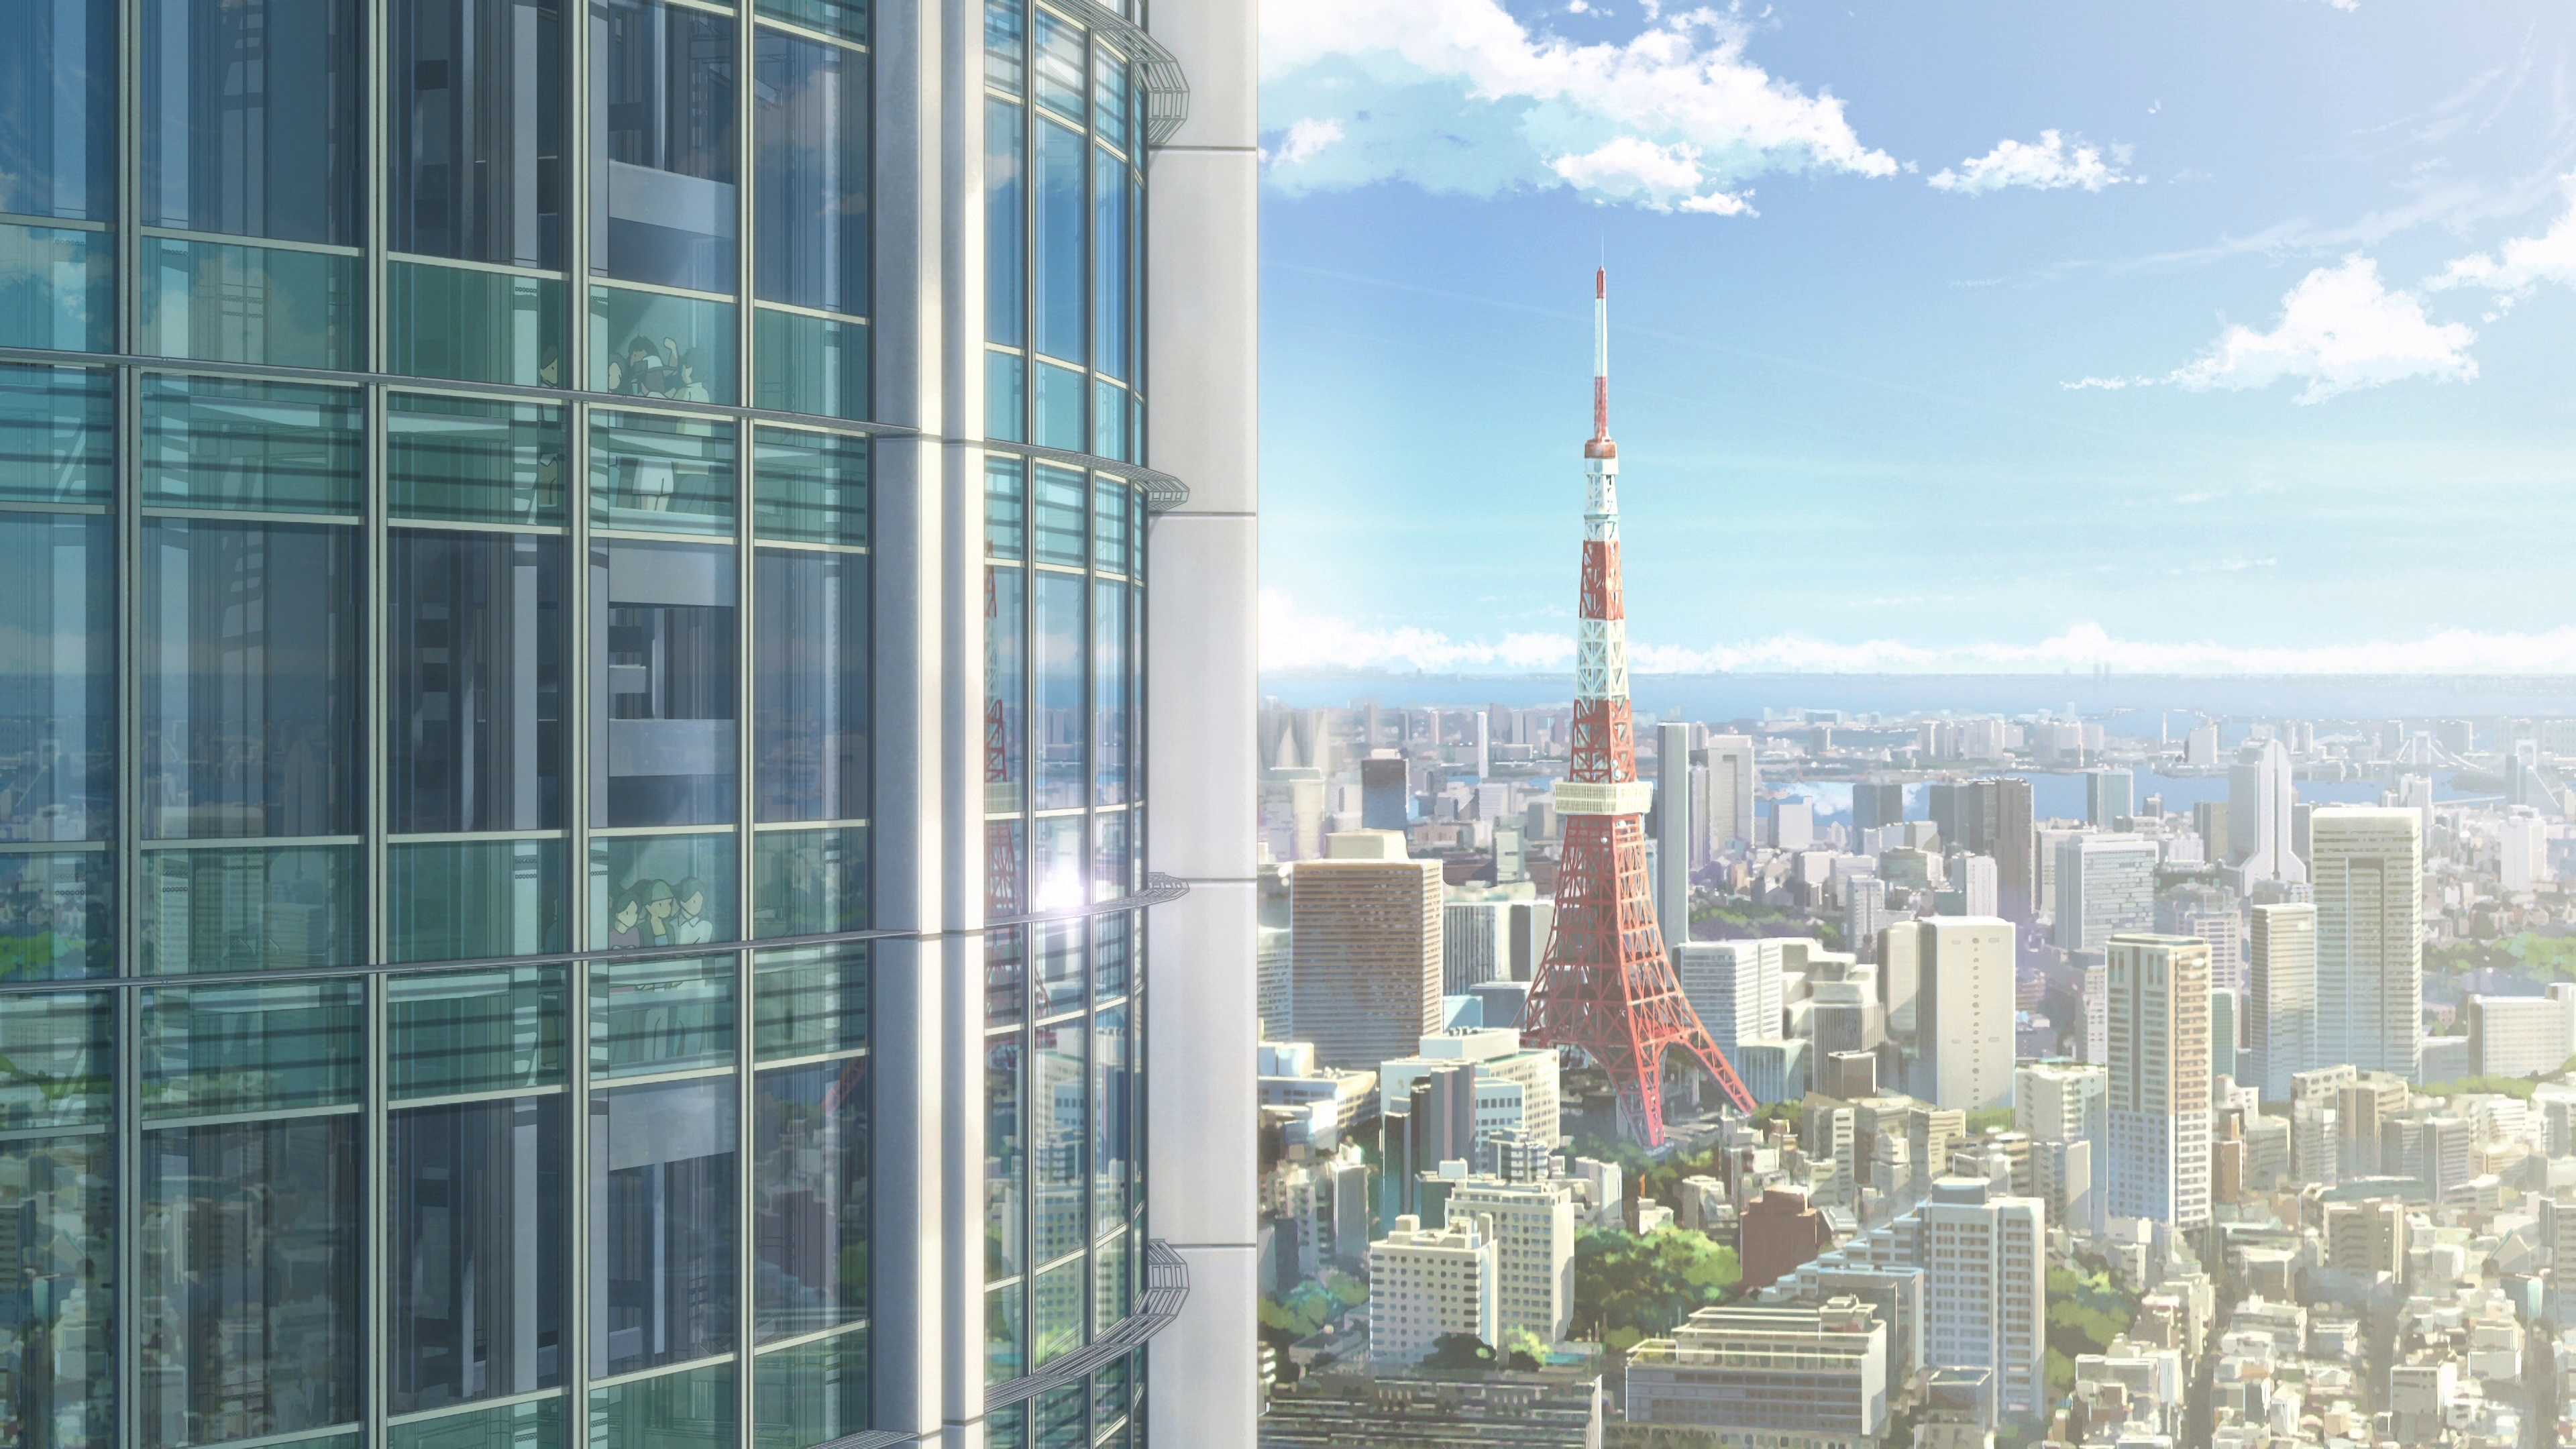 Tokyo Tower, Your Name movie, Anime nostalgia, Makoto Shinkai film, 3840x2160 4K Desktop